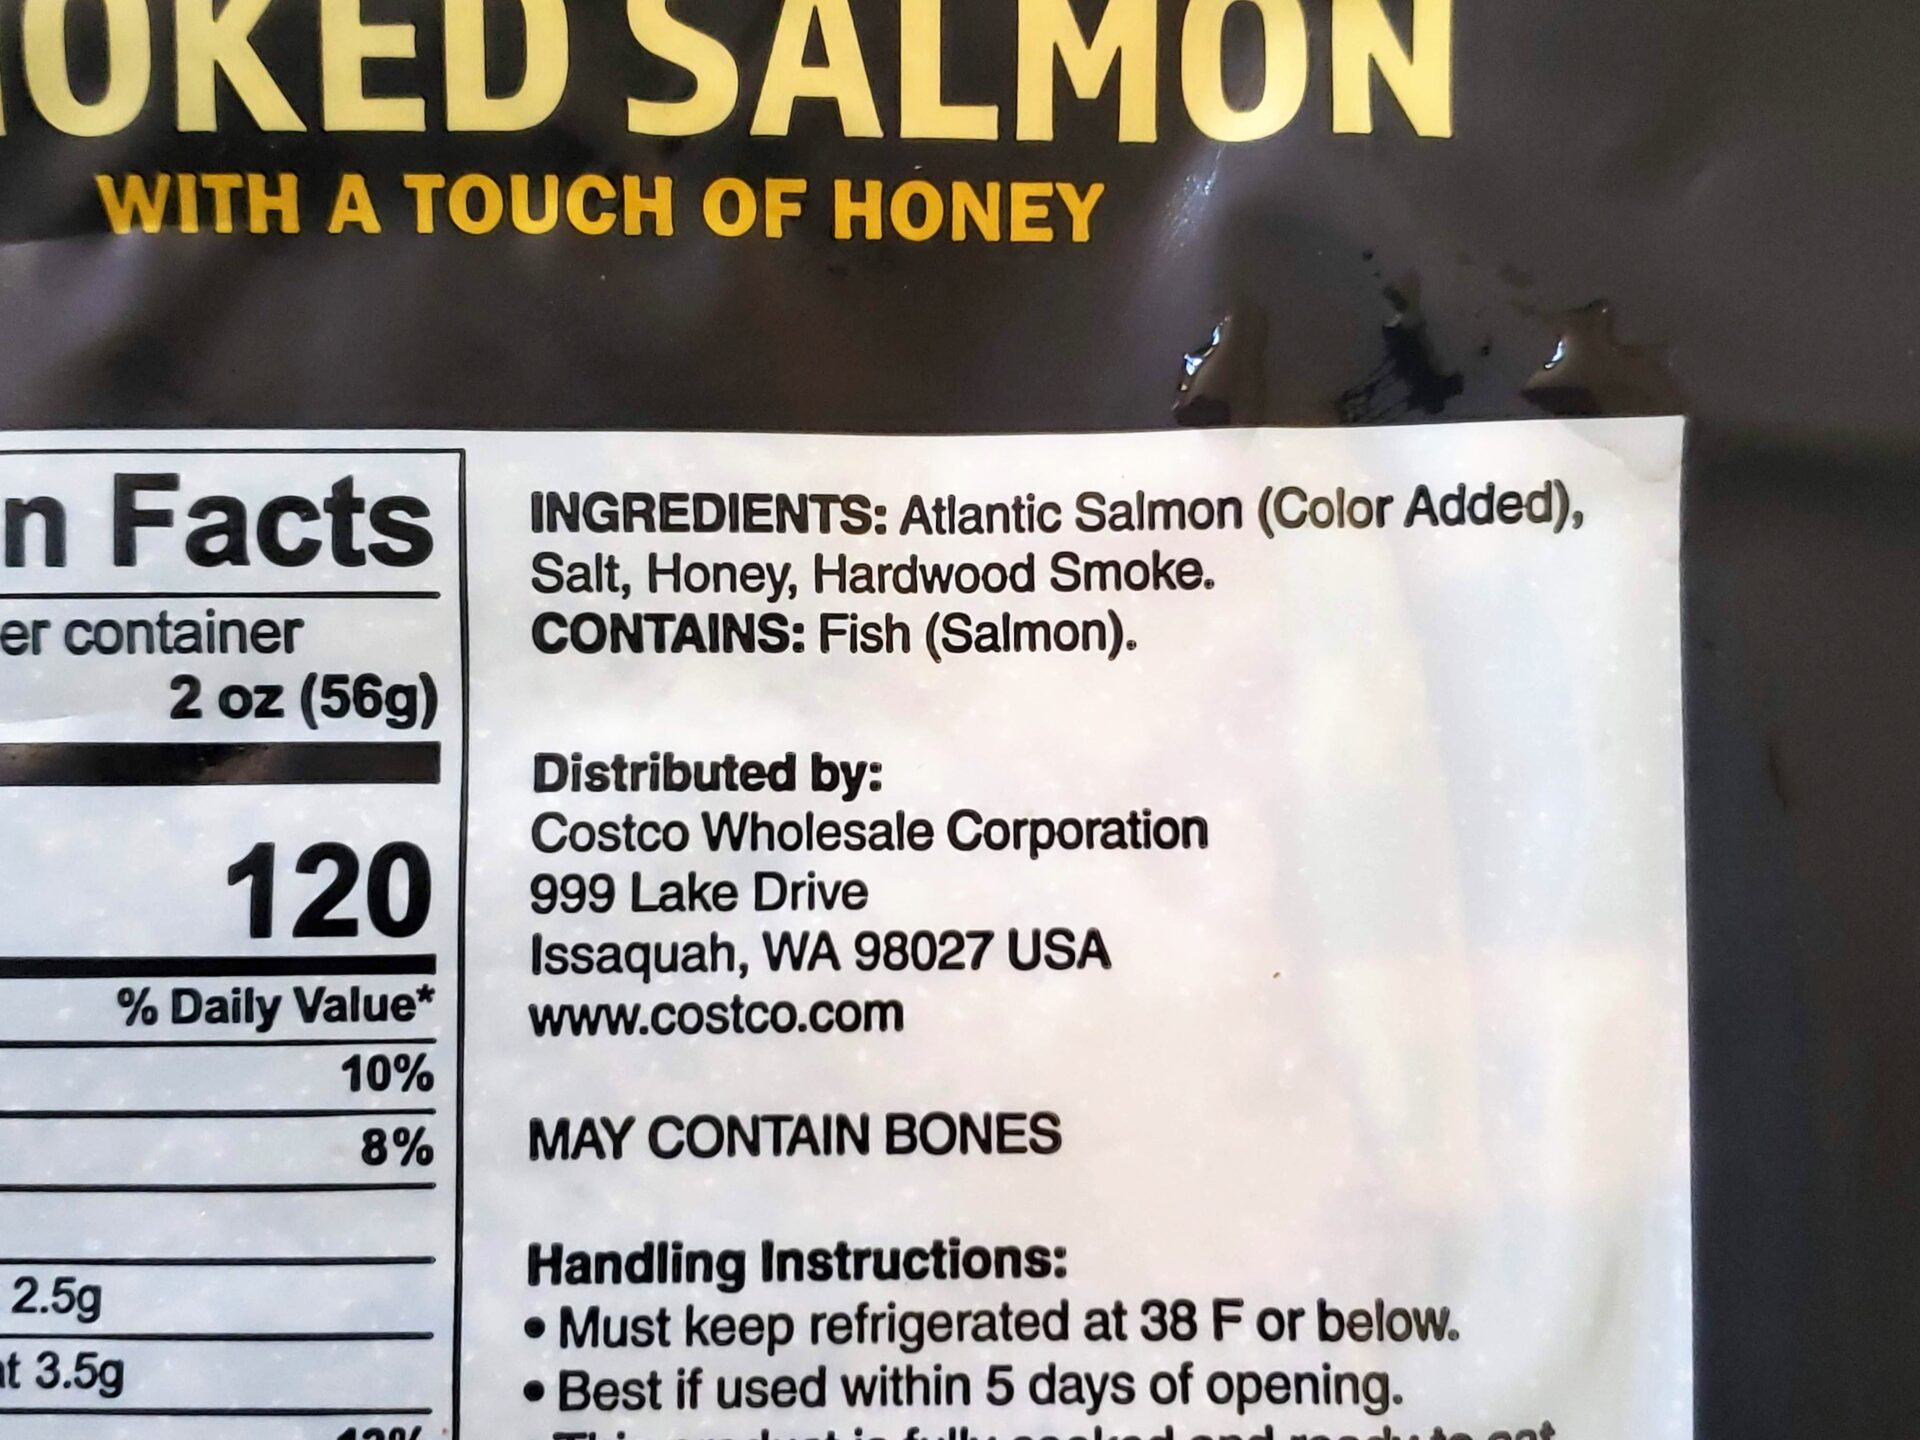 Hot-Smoked-Salmon-Ingredients